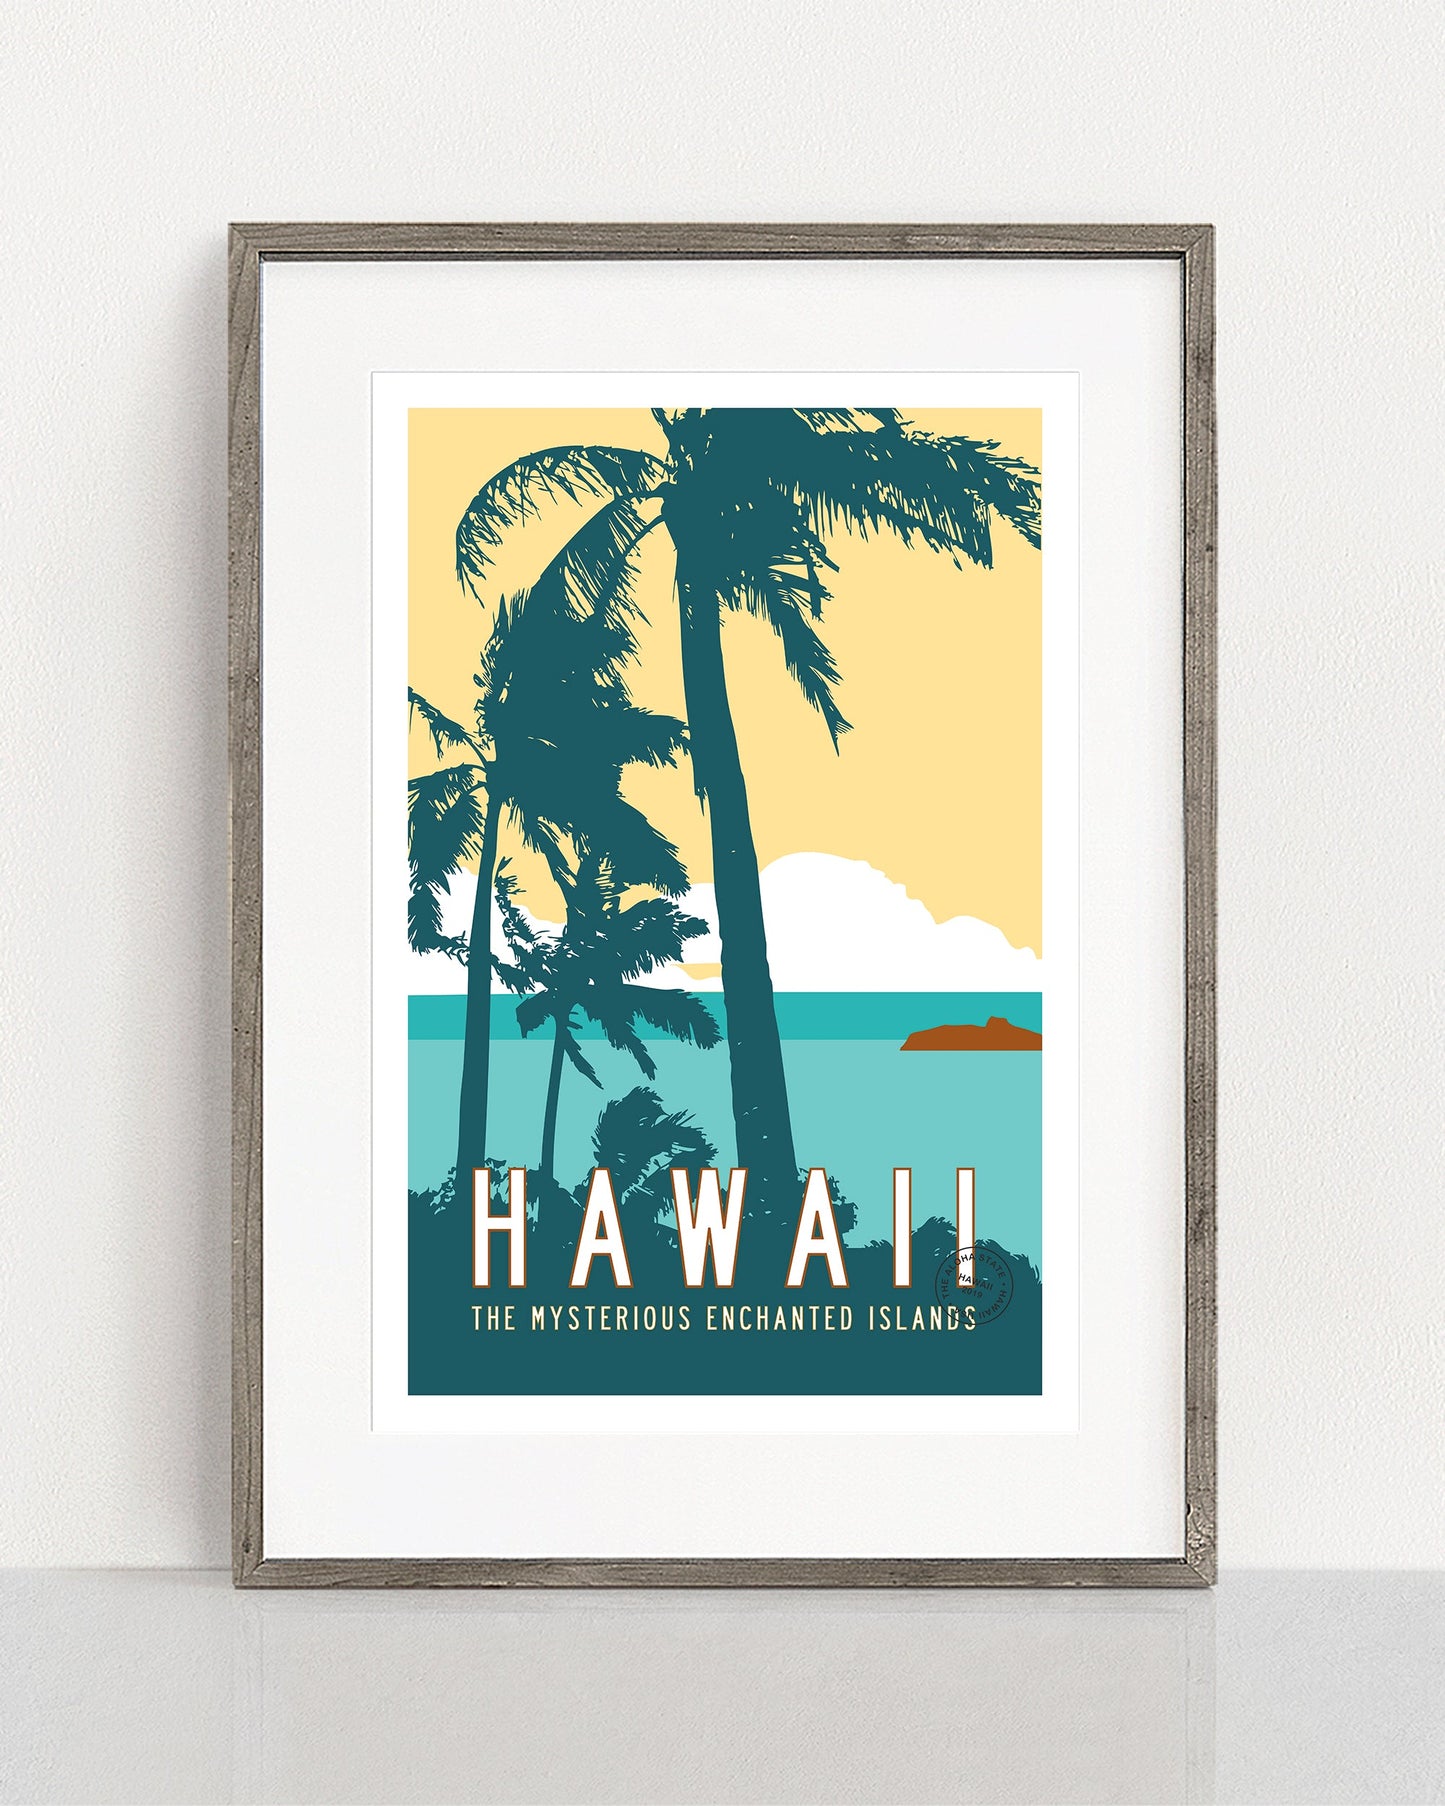 Framed Retro Hawaii Travel Poster - Transit Design